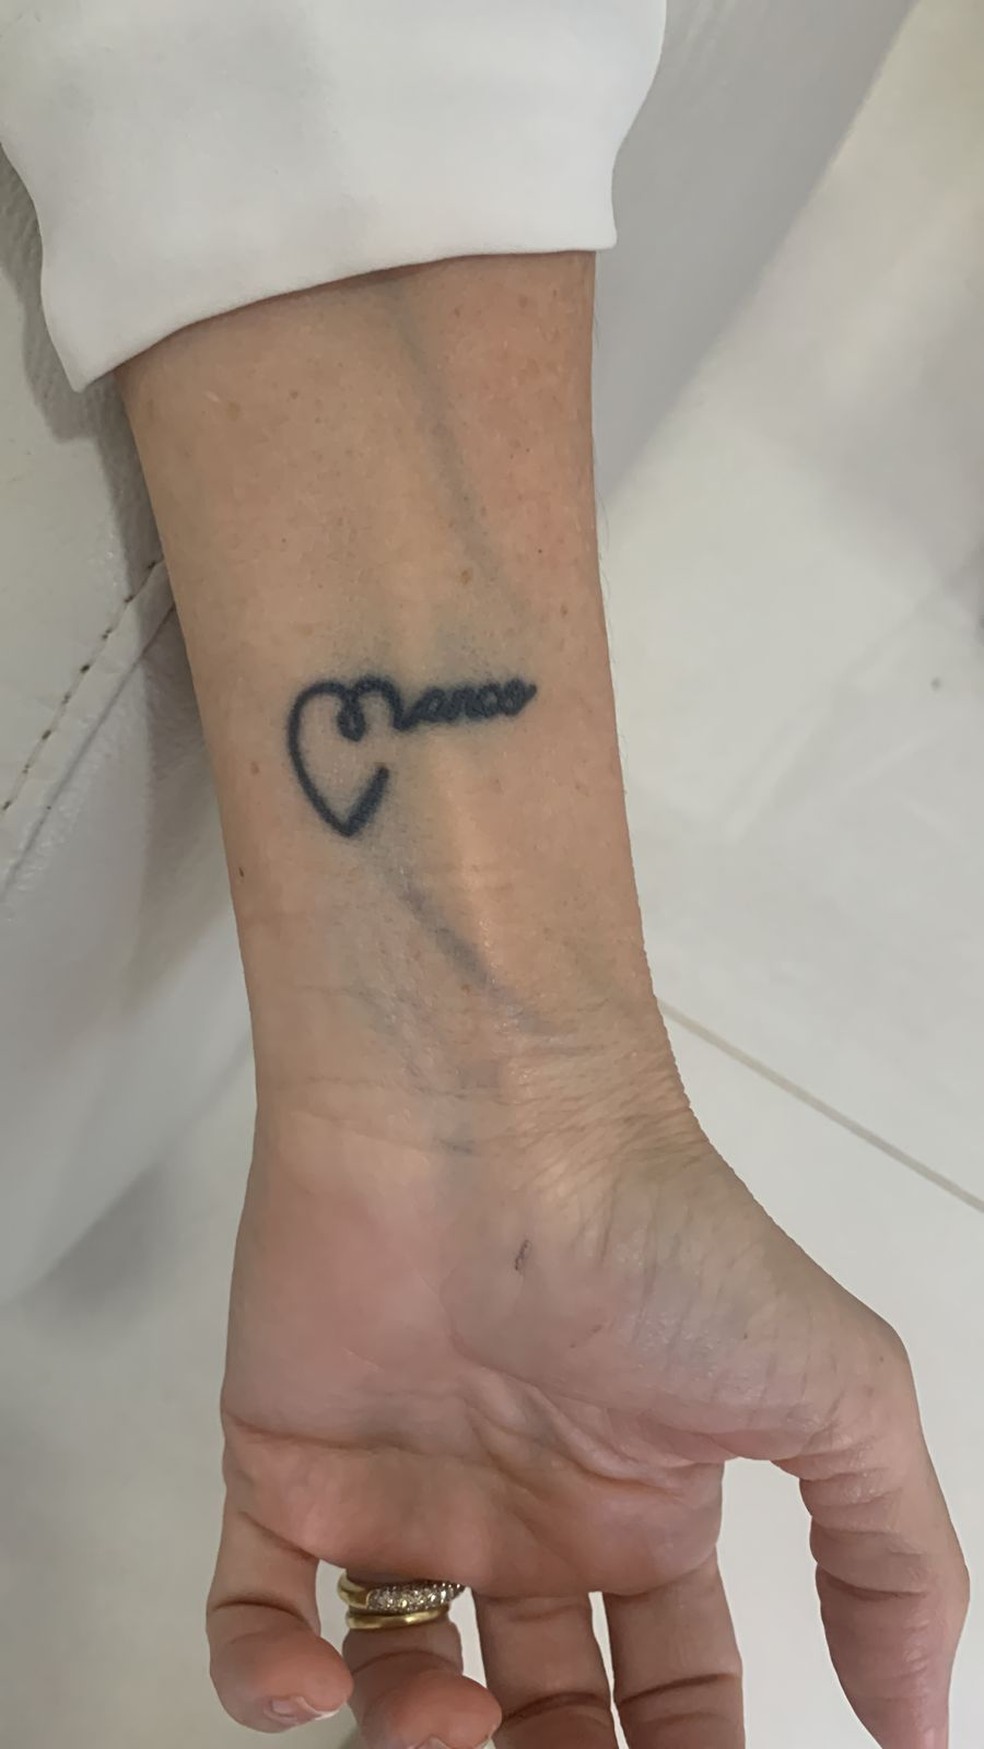 Lílian tatuou o nome do marido no pulso — Foto: Fernanda Resende/Arquivo pessoal